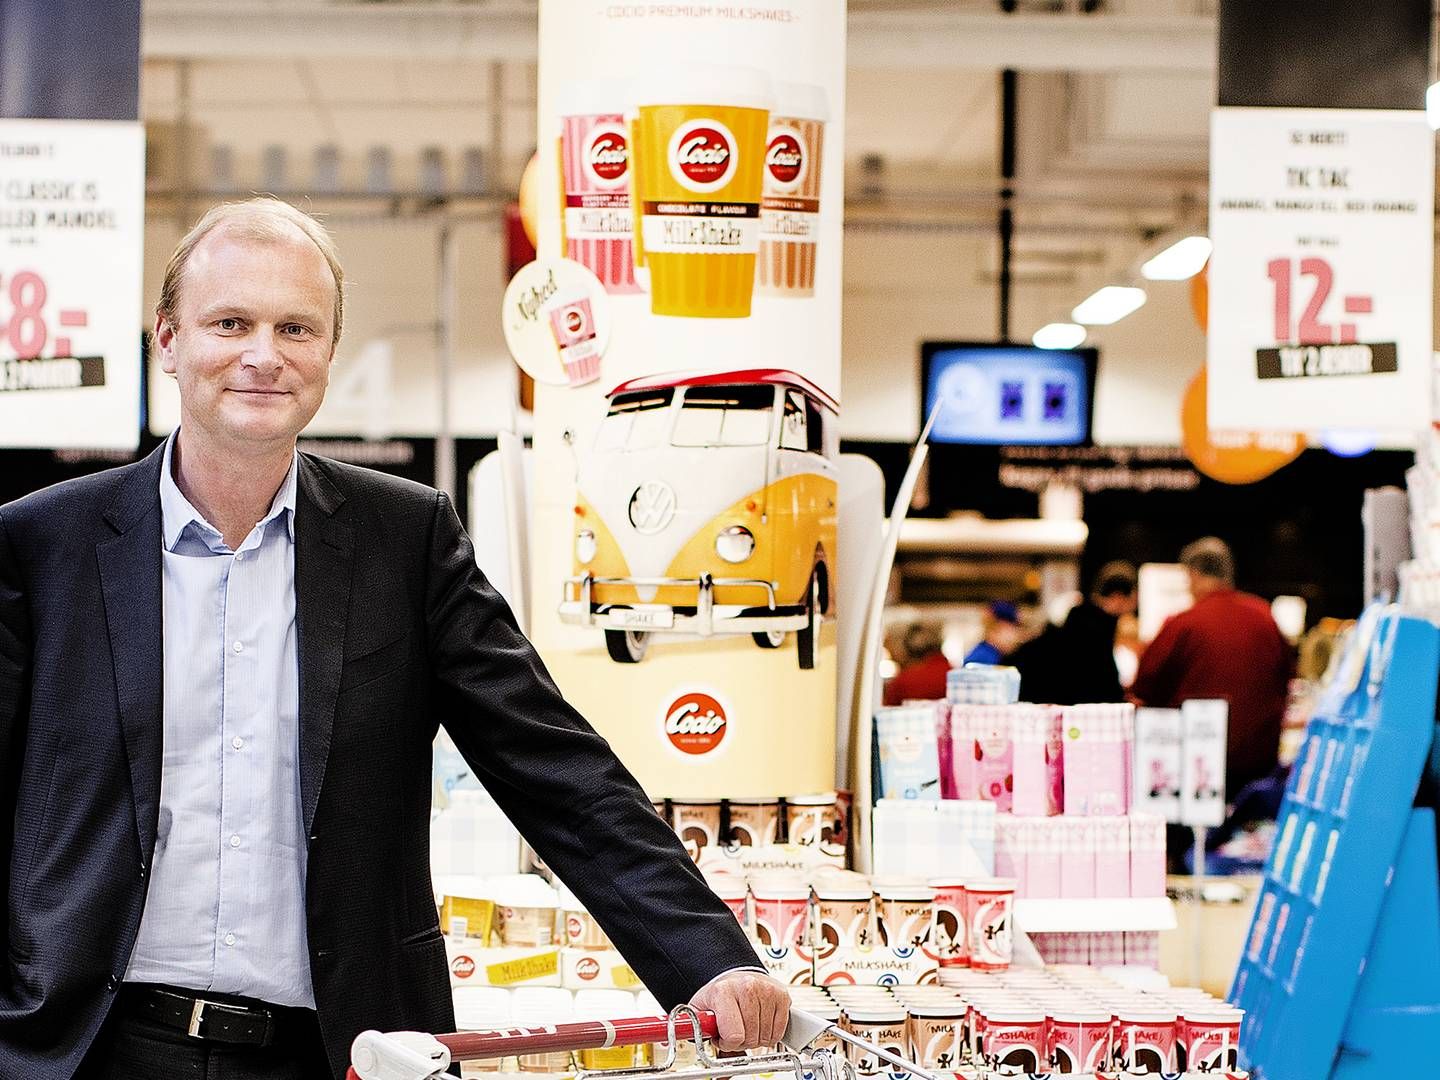 Bestyrelsesformand Lasse Bolander, blåstempler 2021-regnskabet trods lavere lønsomhed og milliontab i discountkæden Fakta. | Foto: Stine Bidstrup/ERH